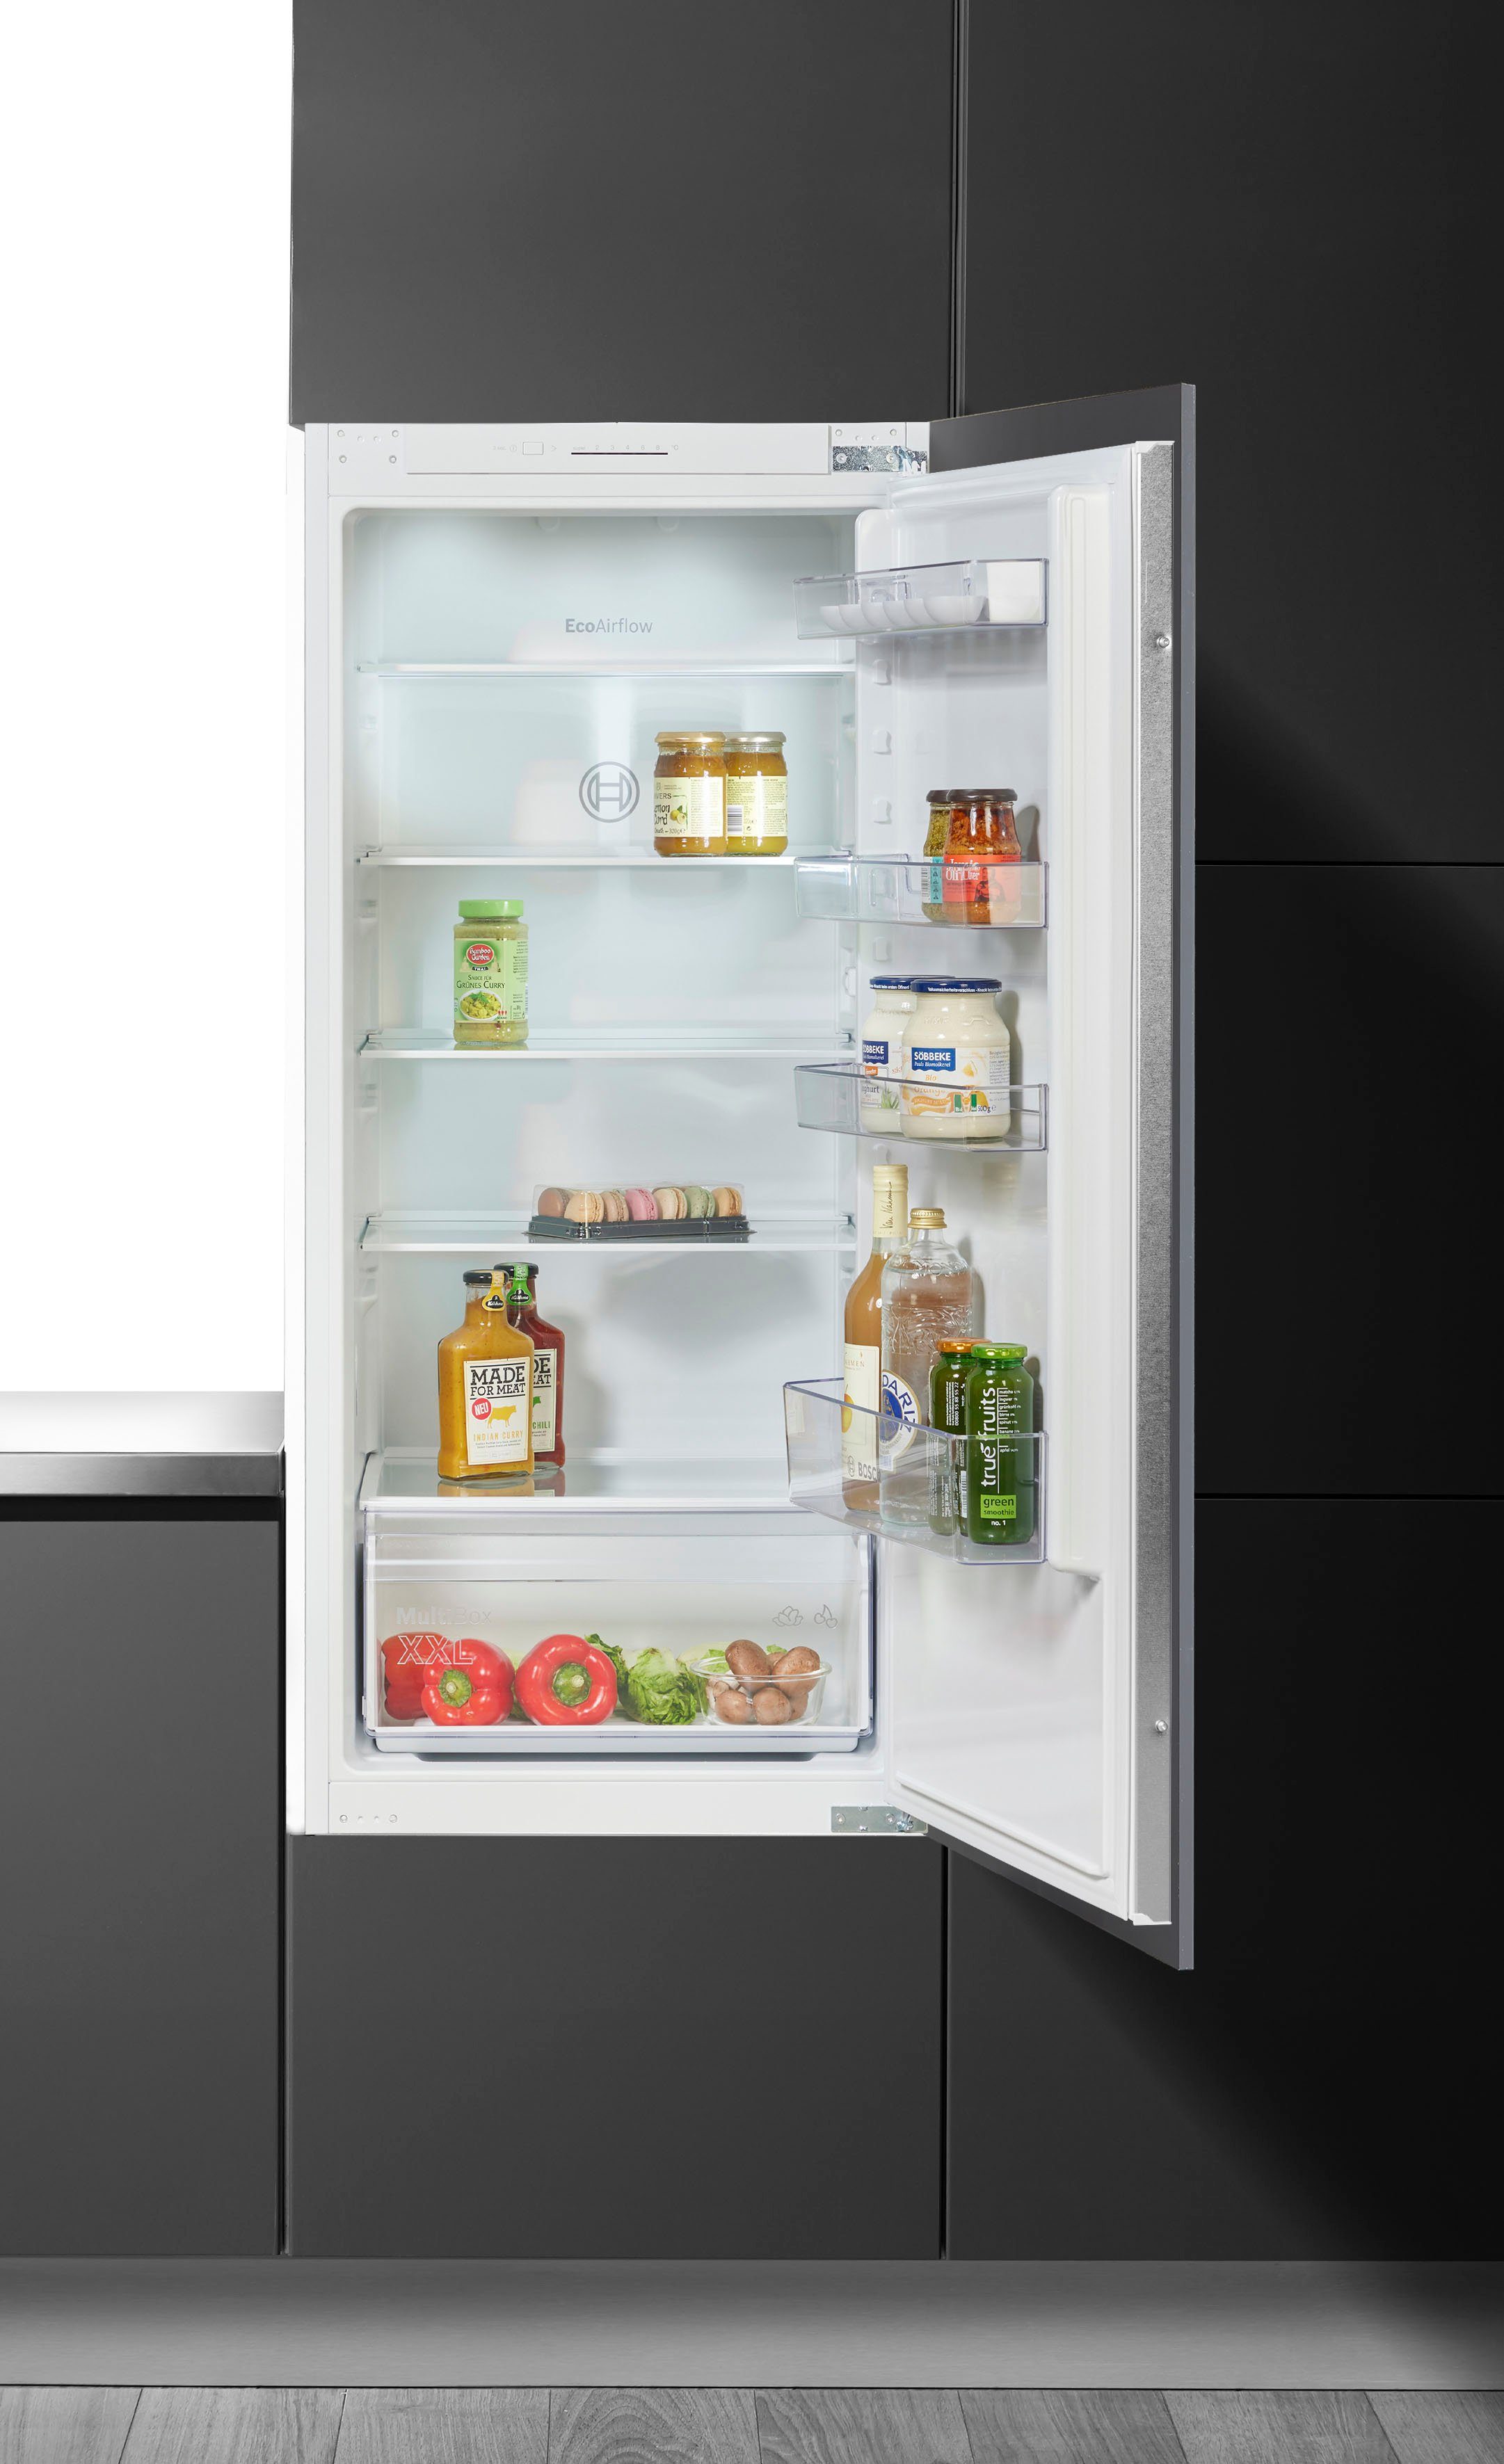 Bosch KIR41NSE0 Inbouw koelkast zonder vriesvak Wit